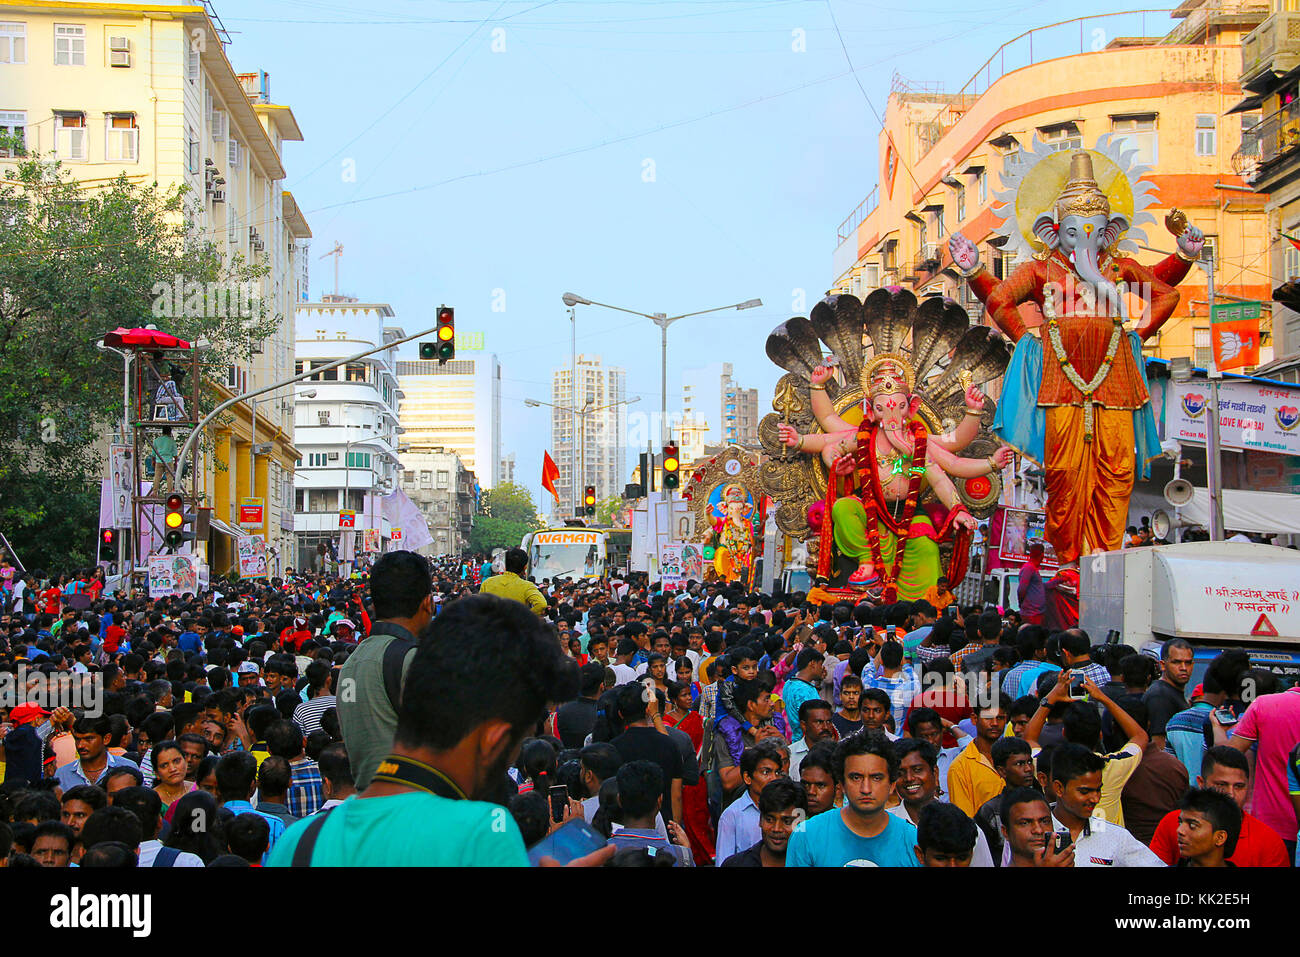 Ganapati procession avec d'énormes idoles Ganapati, transportées sur des camions avec des dévots, Mumbai Banque D'Images